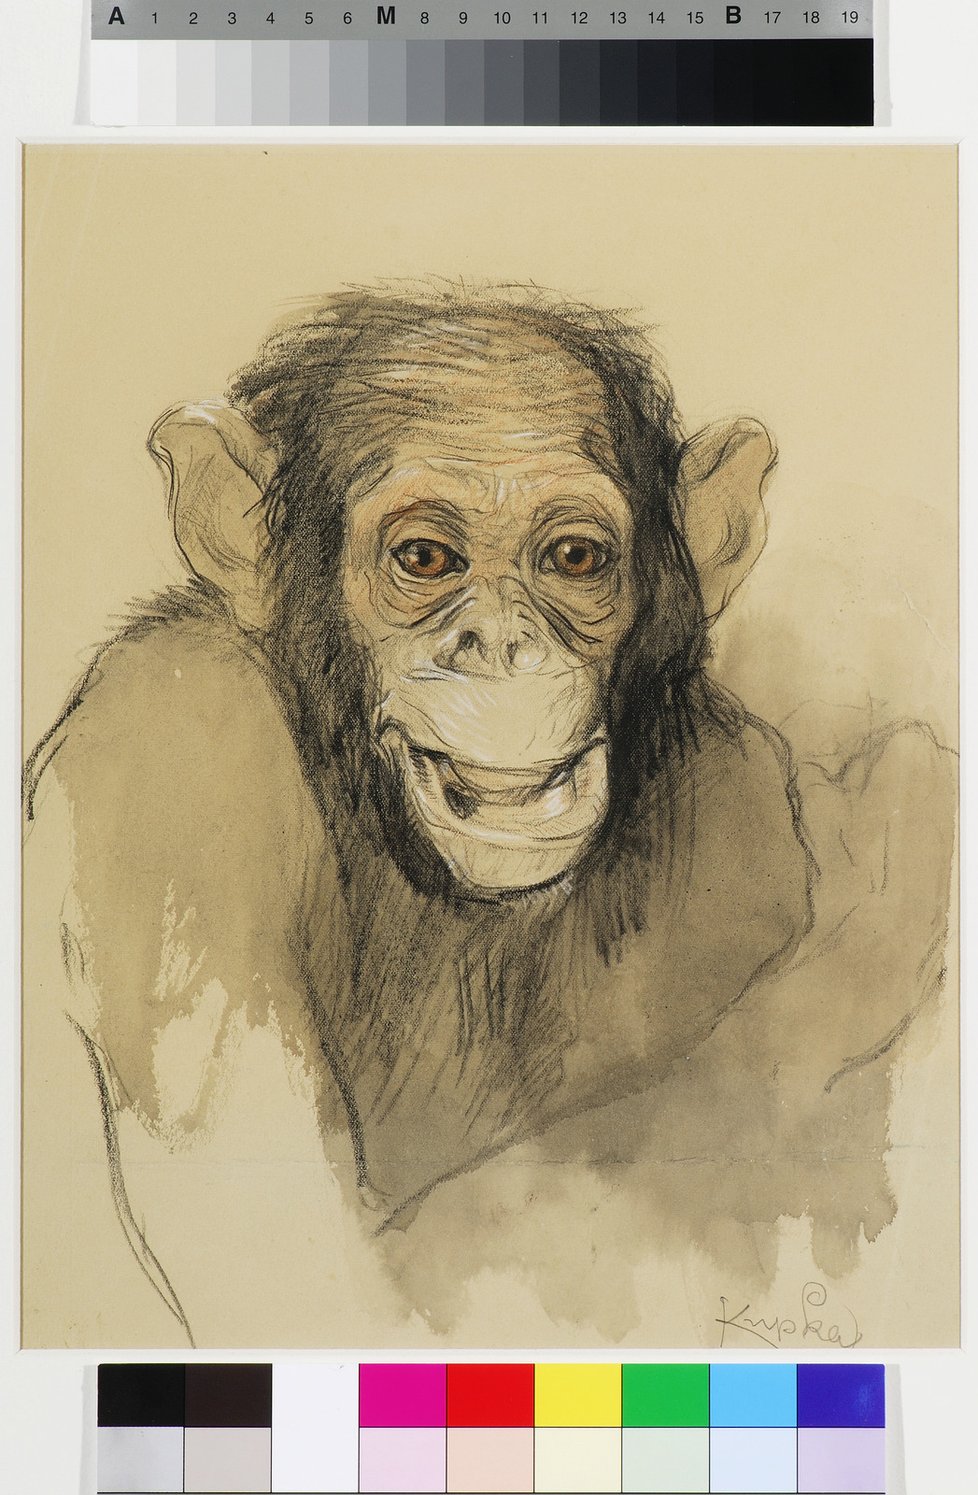 Kupkova studie k opici. (Z expozice Musea Kampa)